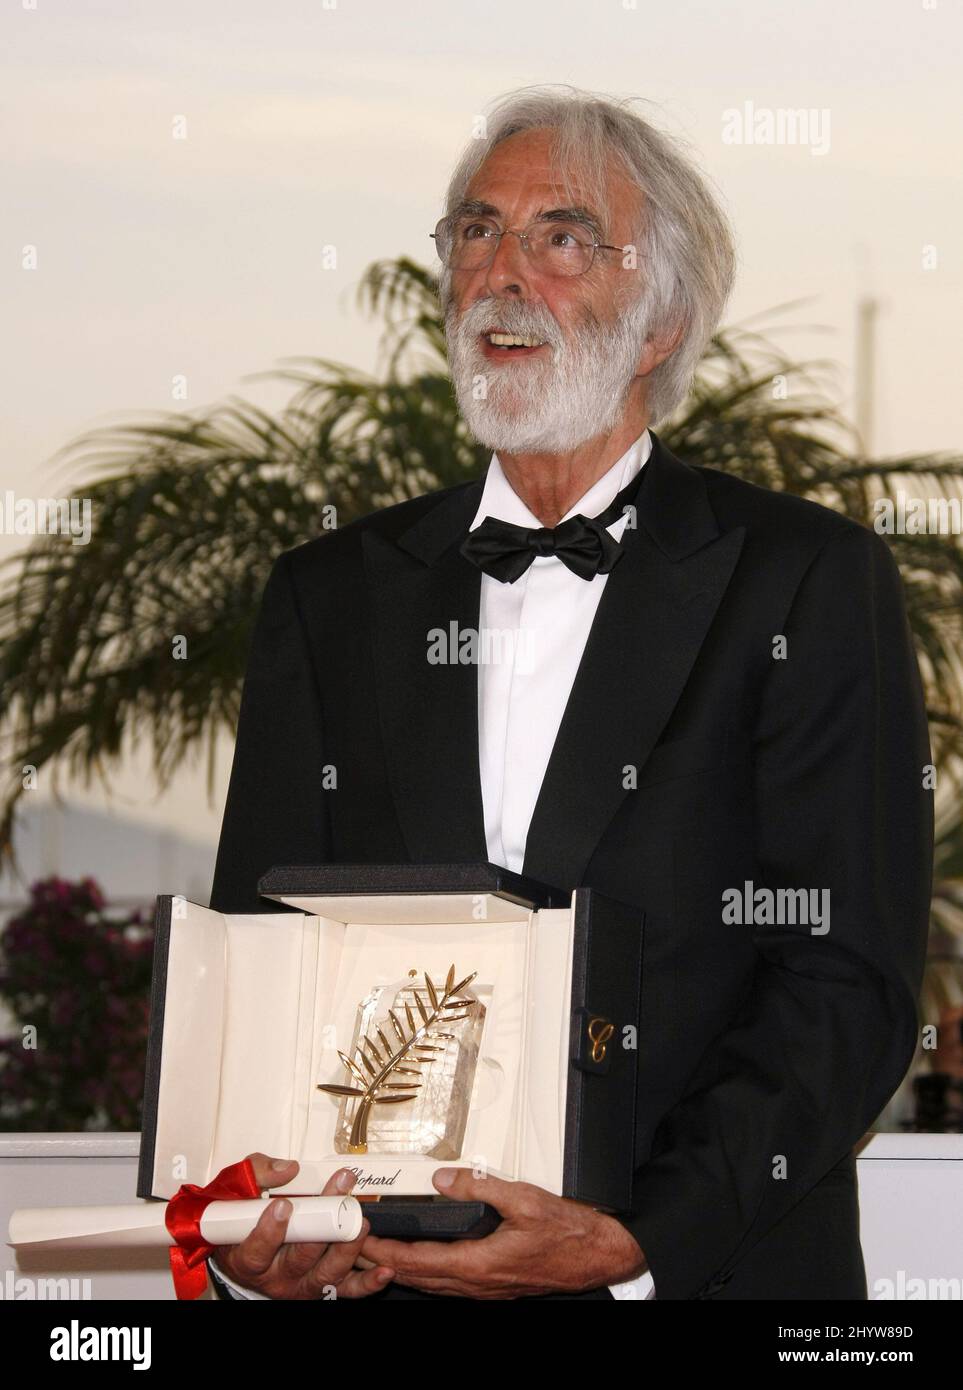 Il regista austriaco Michael Haneke in posa con il premio Palme d'Or ha ricevuto per il film "The White Ribbon", in una telefonata dopo la cerimonia di premiazione, durante il festival internazionale del cinema 62nd a Cannes. Foto Stock